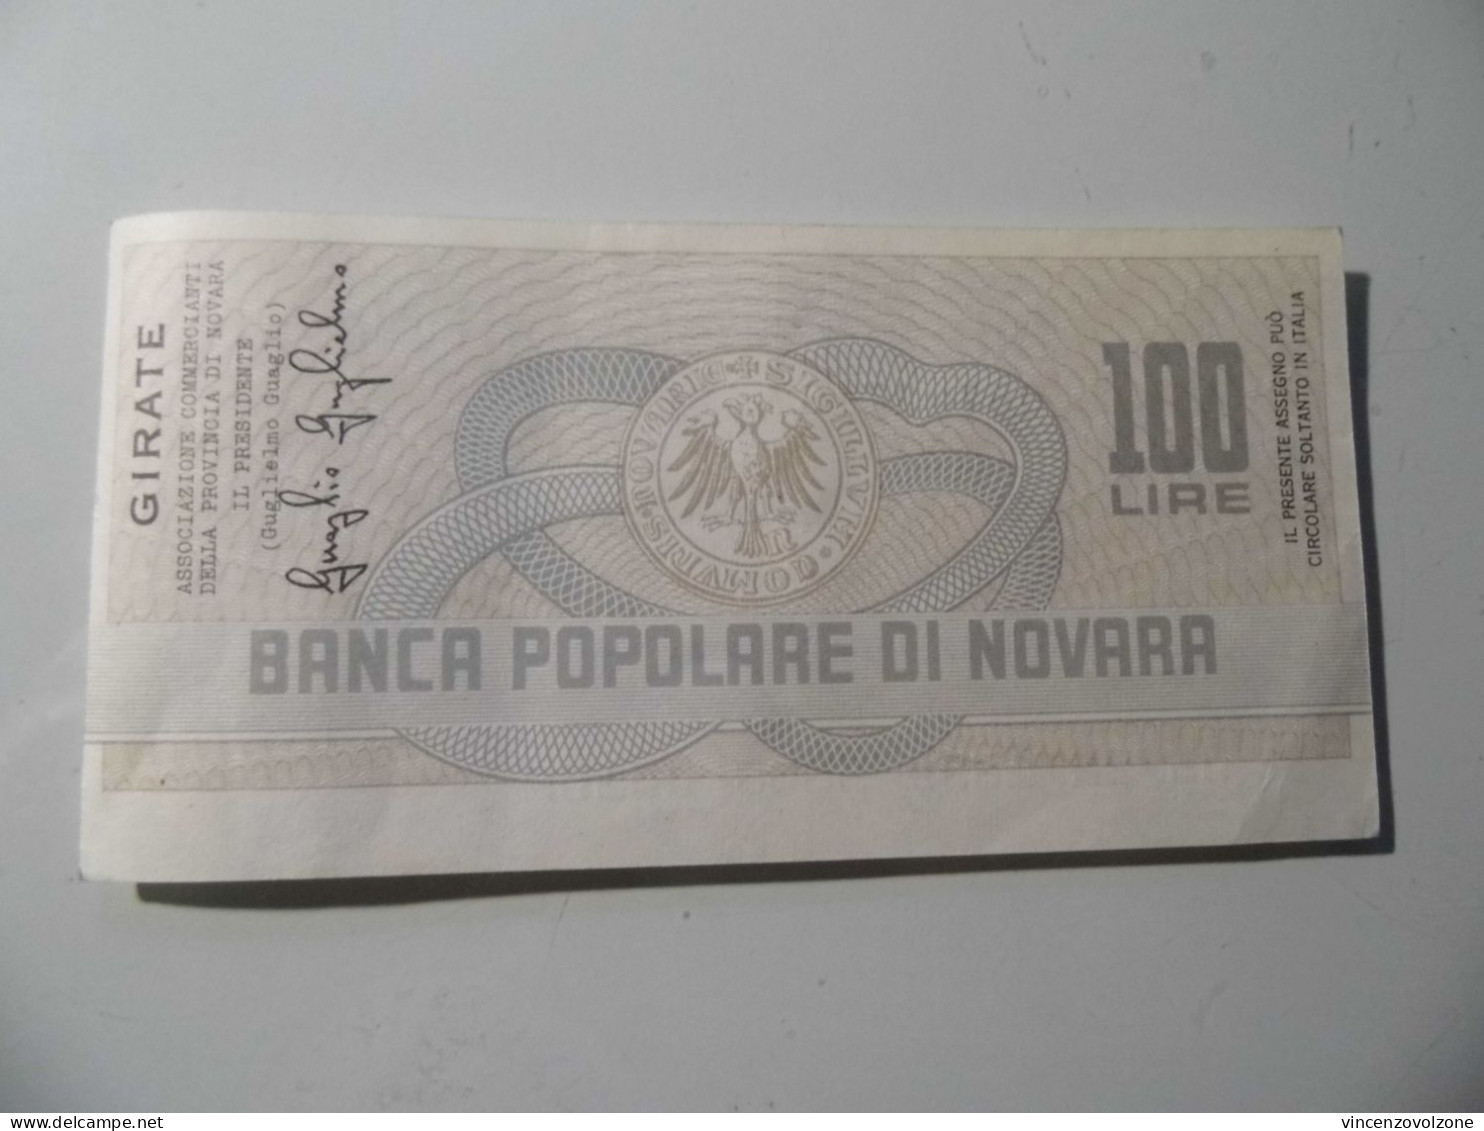 Miniassegno "BANCA POPOLARE DI NOVARA LIT. 100" - [10] Checks And Mini-checks